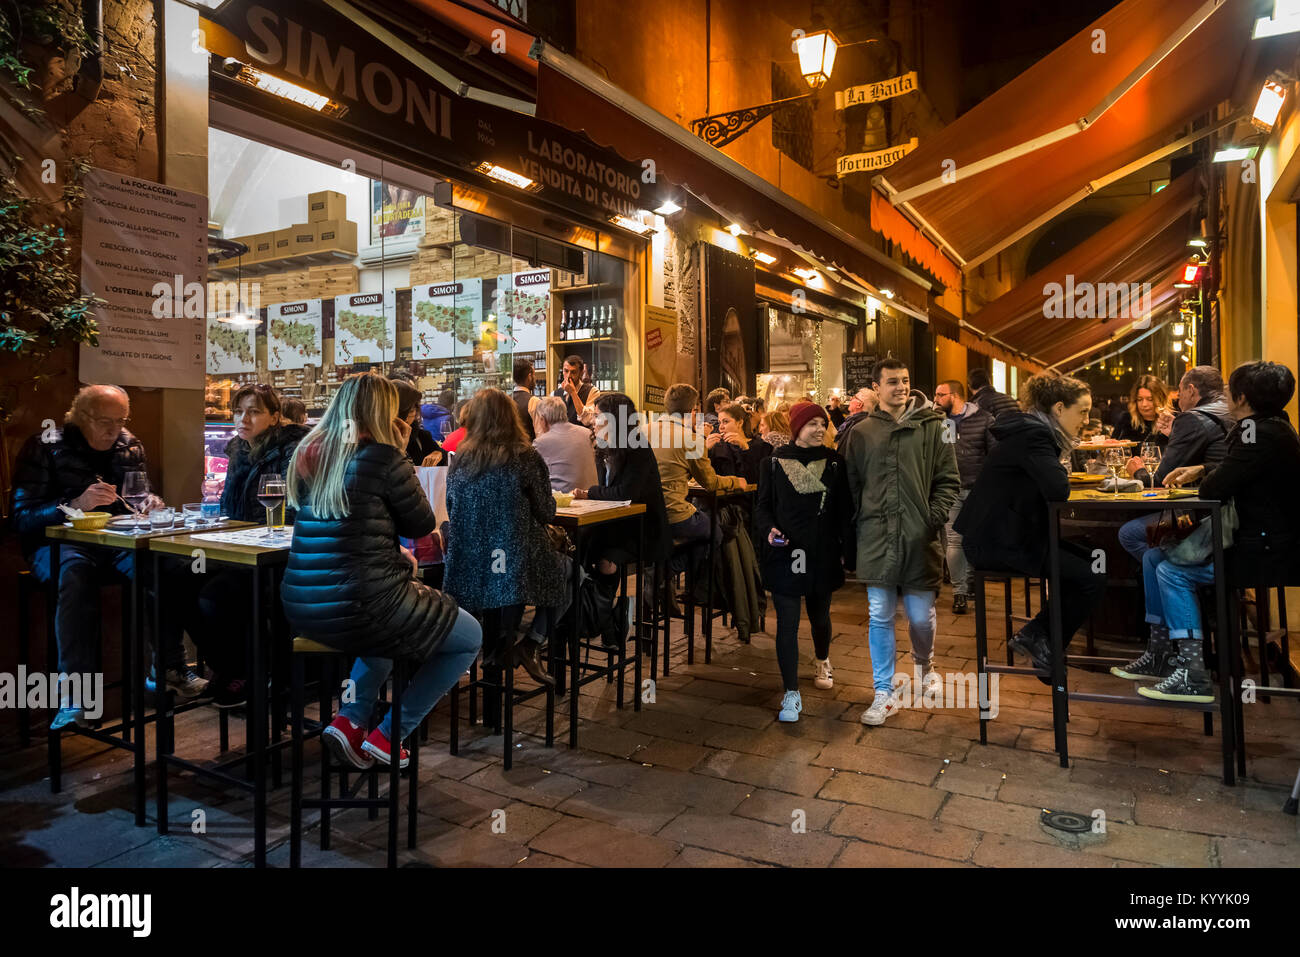 Die Menschen sitzen, essen und trinken in Restaurants, Cafés und Bars in der Via Pescherie Vecchie, eine Straße in der Stadt Bologna, Italien bei Nacht Stockfoto